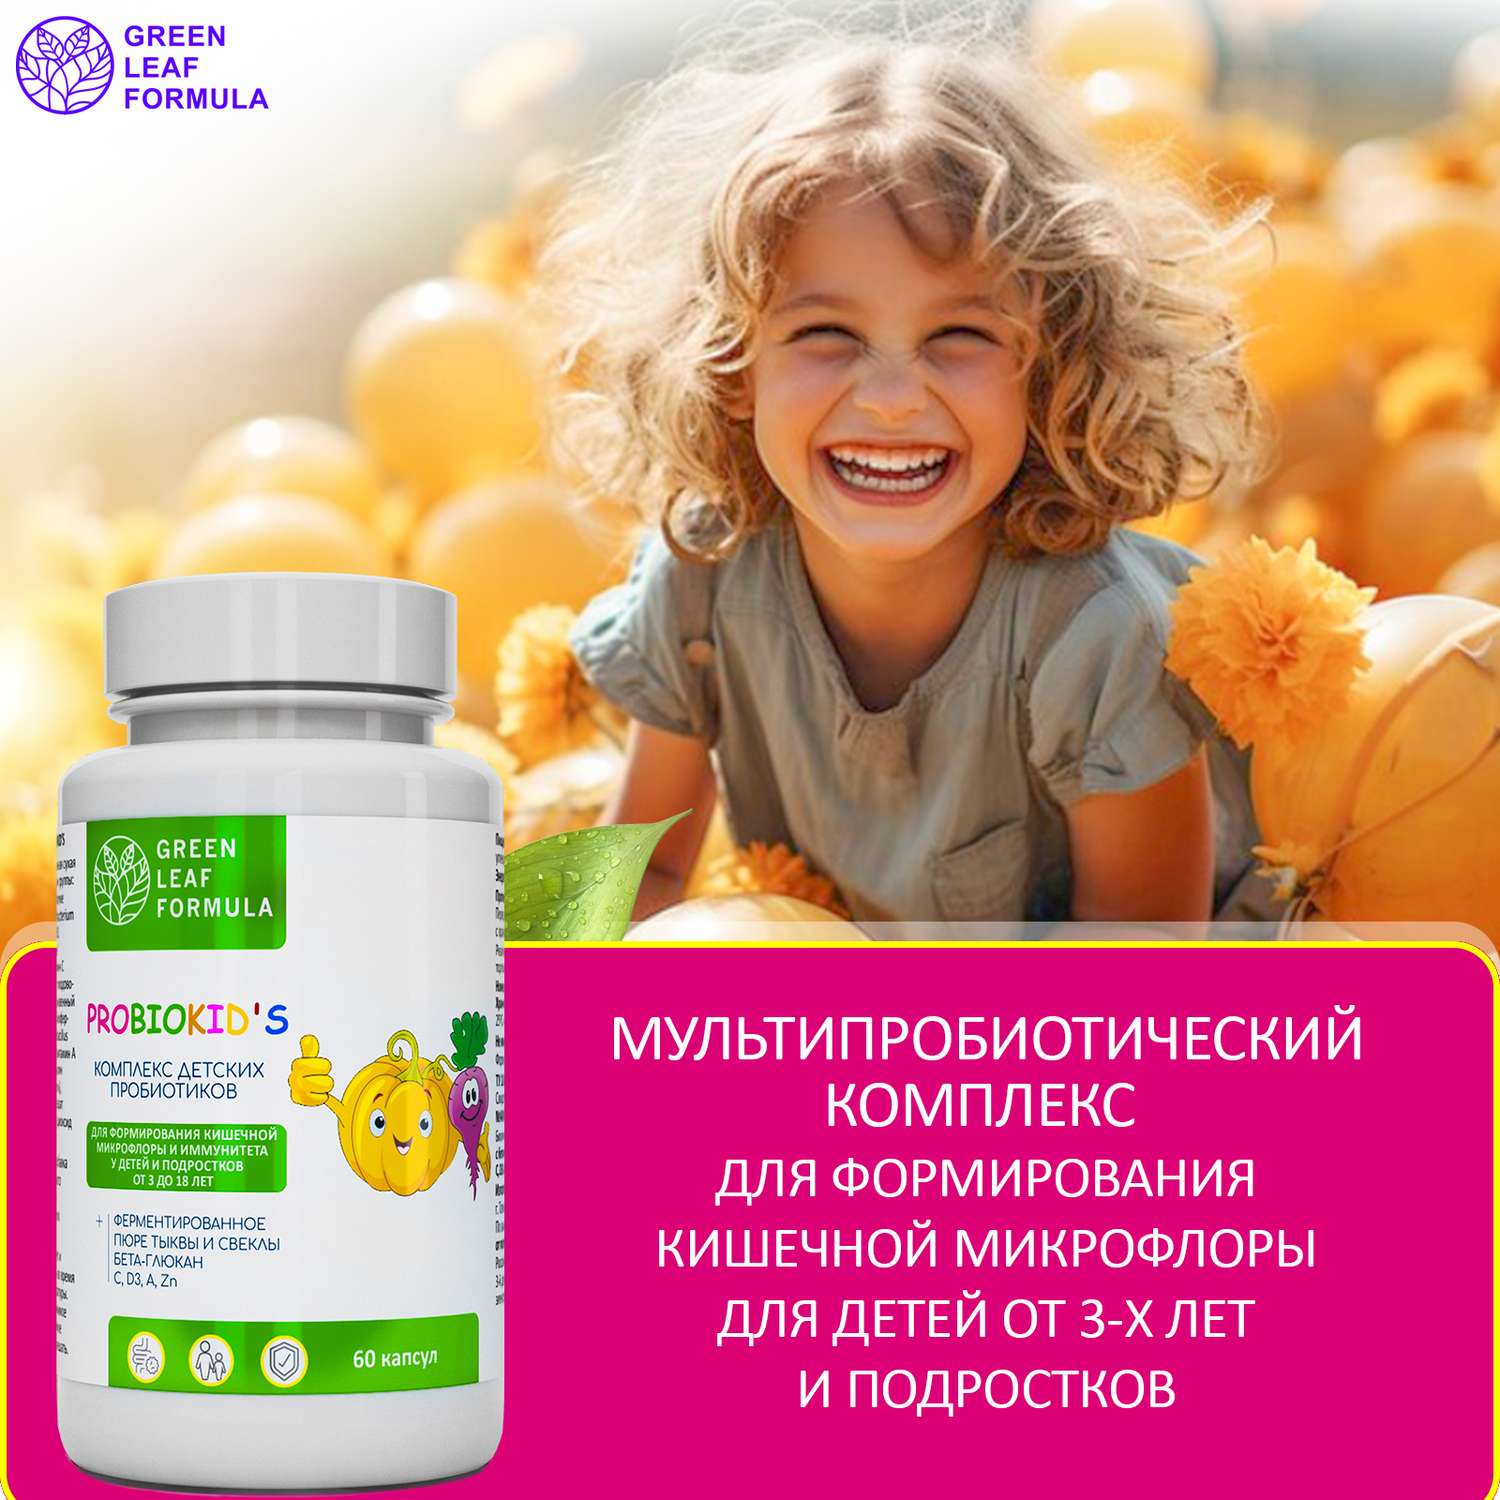 Детский пробиотик Green Leaf Formula витаминный комплекс для детей от 3 лет 2 банки по 60 капсул - фото 6